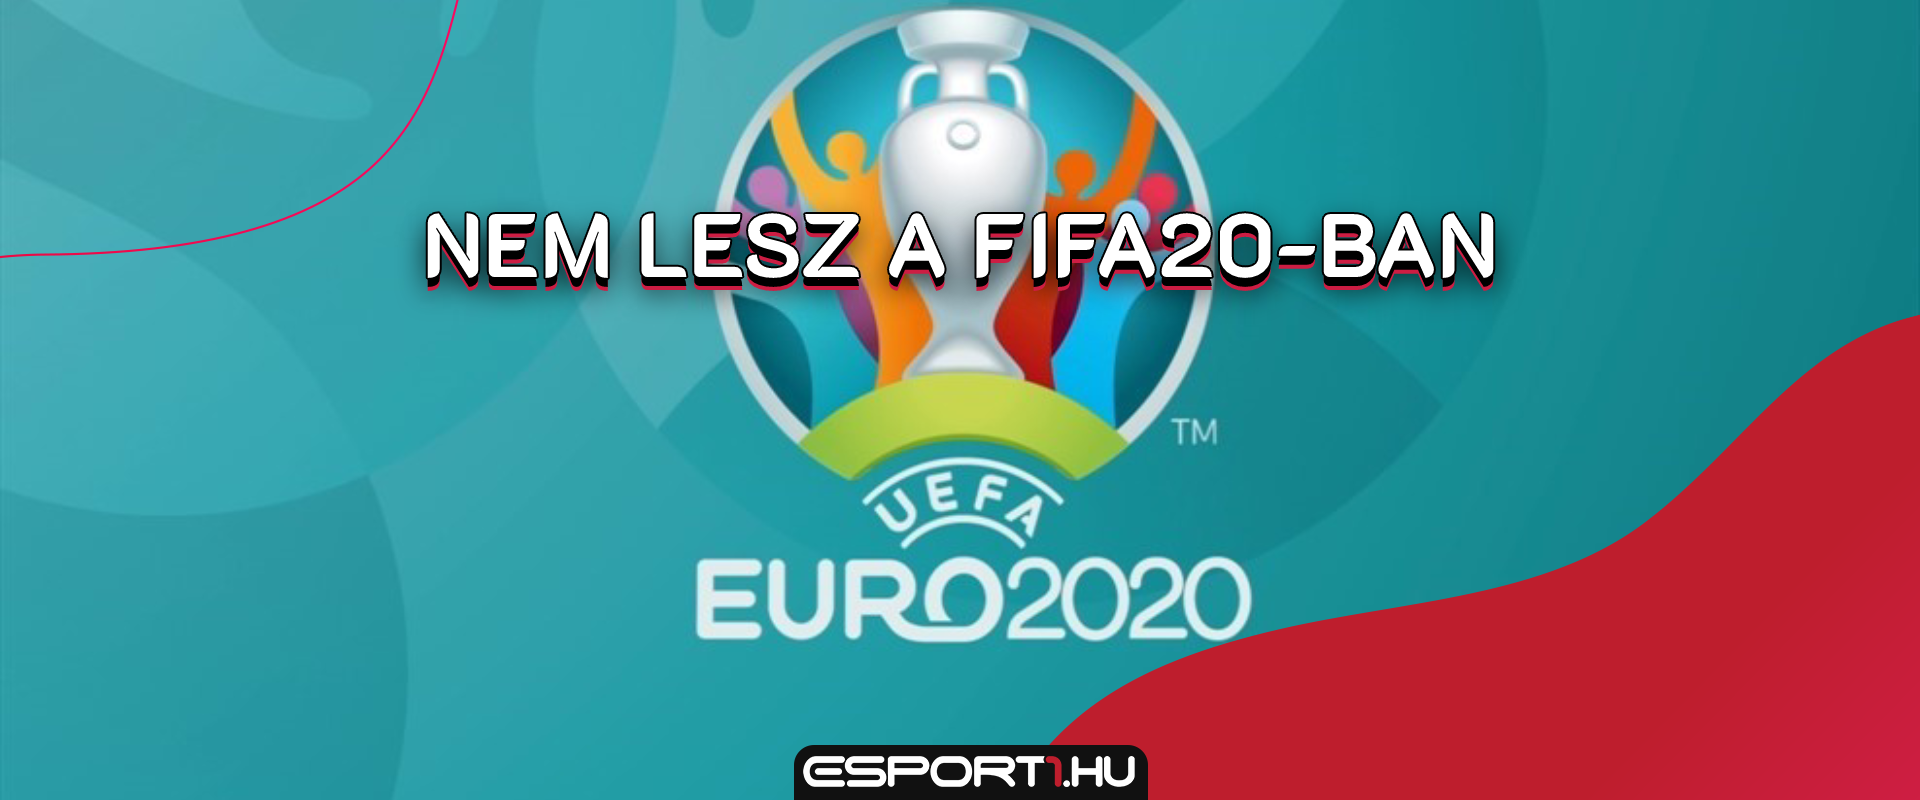 Az UEFA és a Konami virtuális Európa-bajnokságot indít!